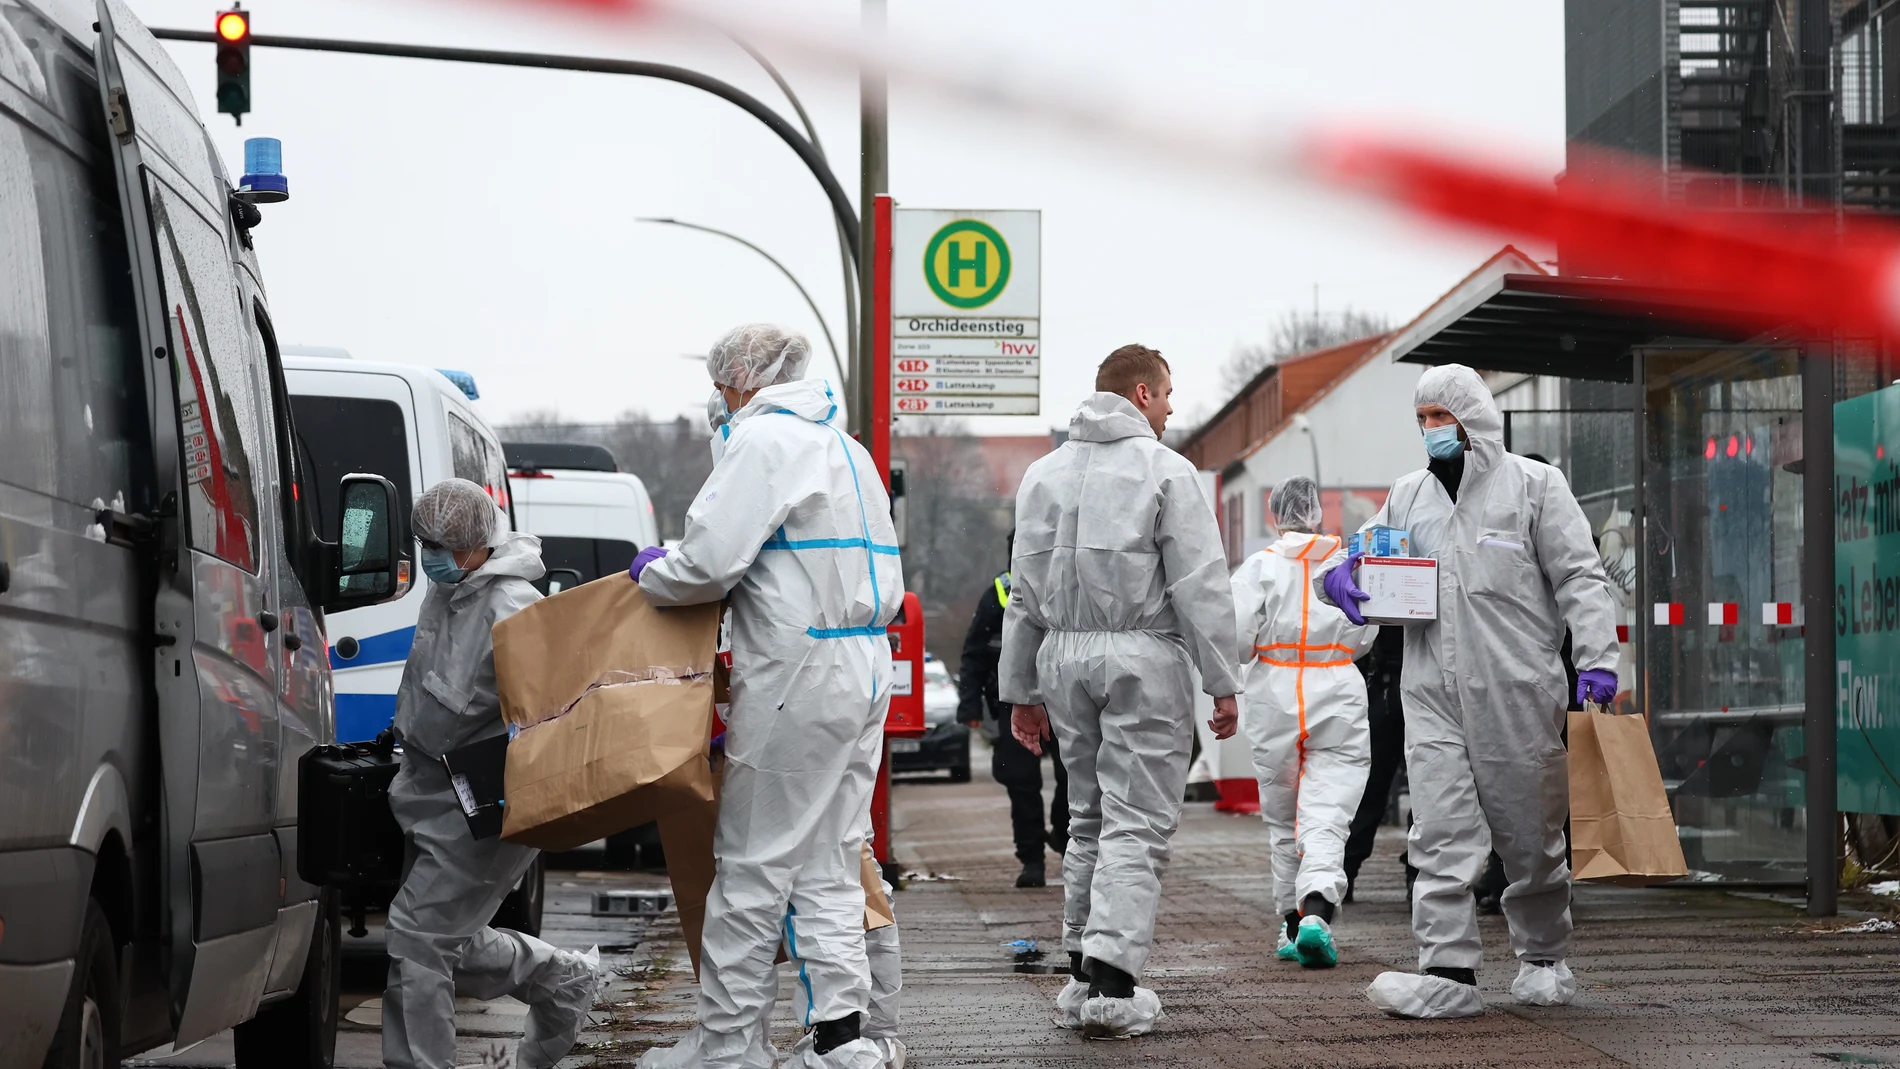 Alemania.- La Policía identifica al tirador de Hamburgo como un antiguo Testigo de Jehová y descarta el móvil terrorista